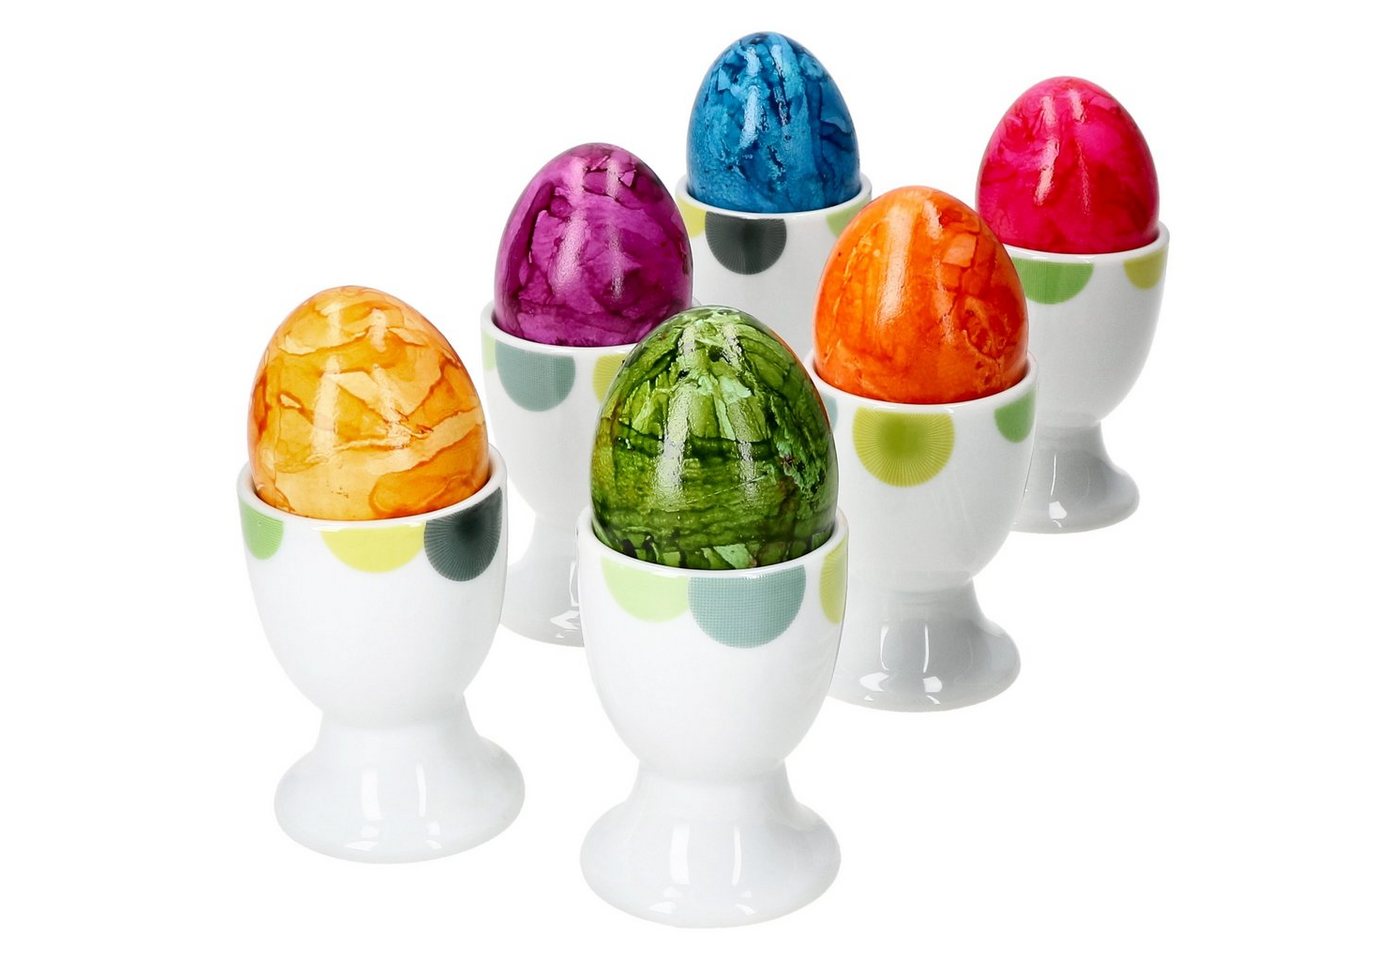 van Well Eierbecher 6x Rondo Eierbecher Kreise Eierhalter Eierständer Porzellan Ostern von van Well